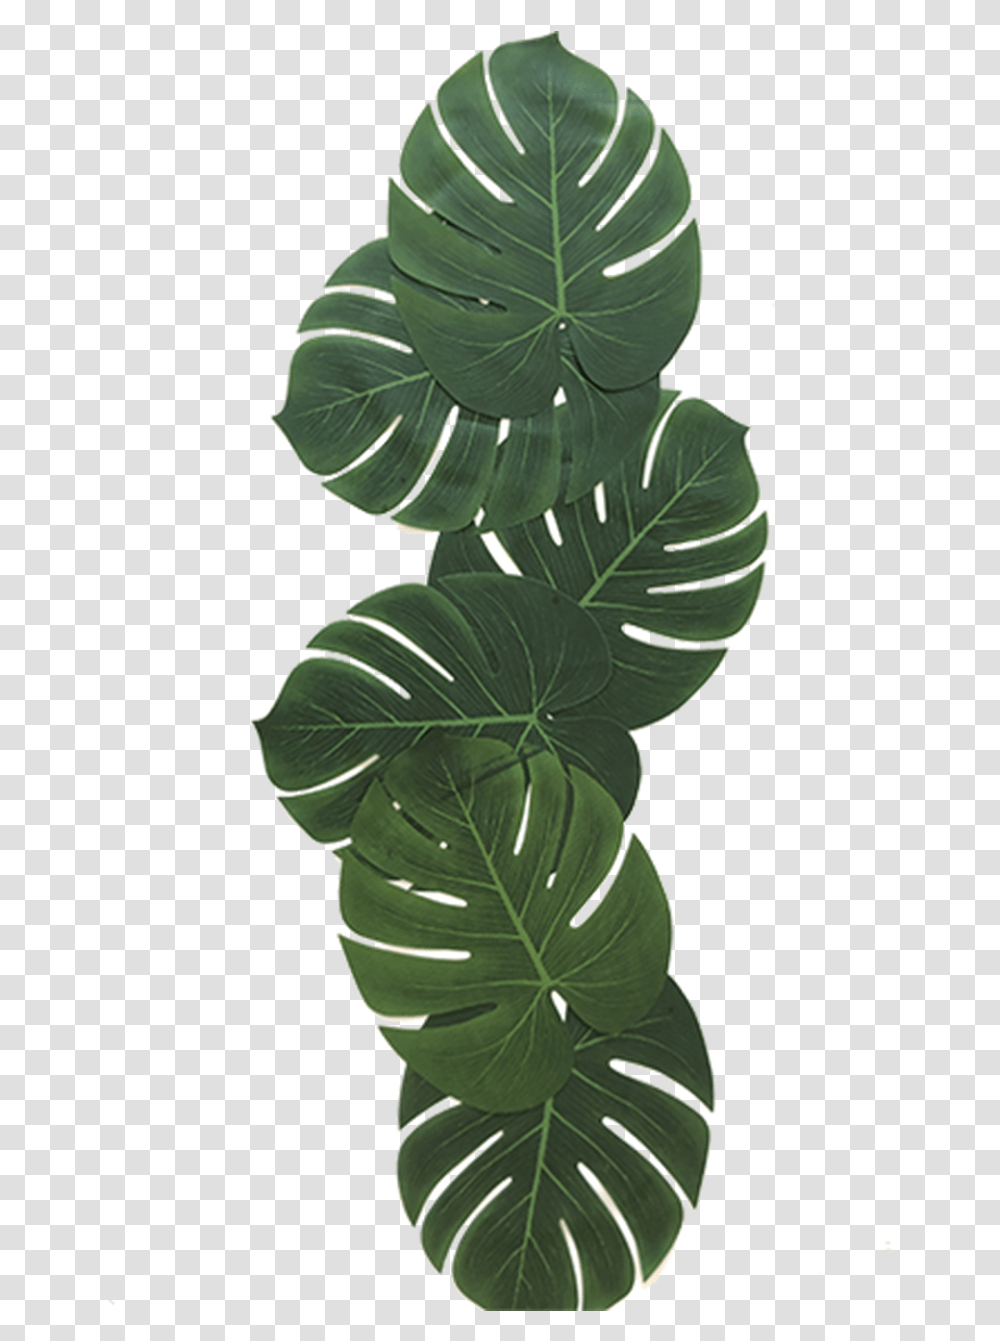 Tropical Leaves Illustration, Leaf, Plant, Home Decor, Green Transparent Png